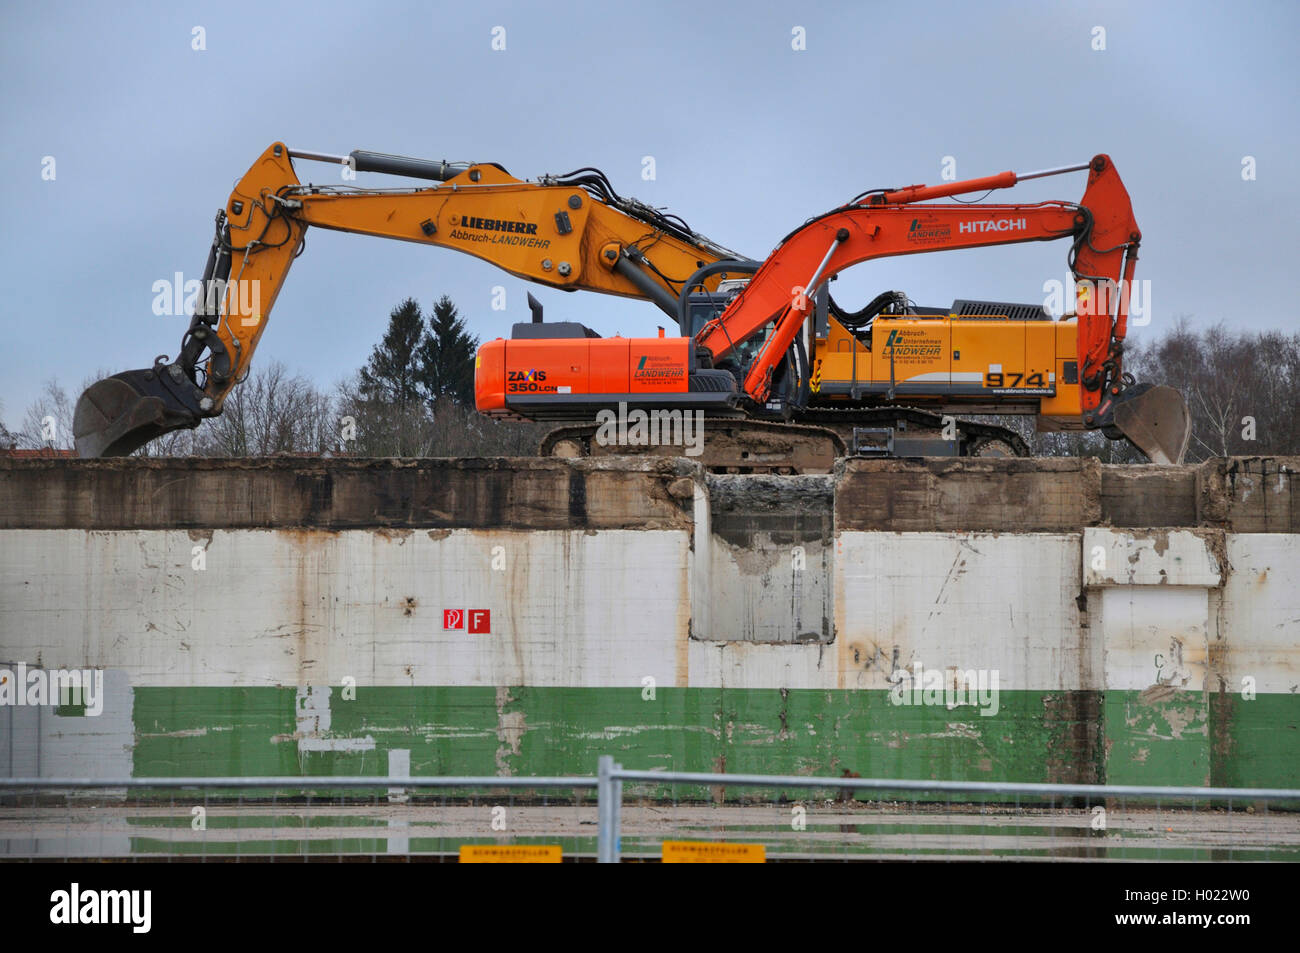 shovel excavators demolishing automobile plant Opel Werke II/III, Germany, North Rhine-Westphalia, Ruhr Area, Bochum Stock Photo